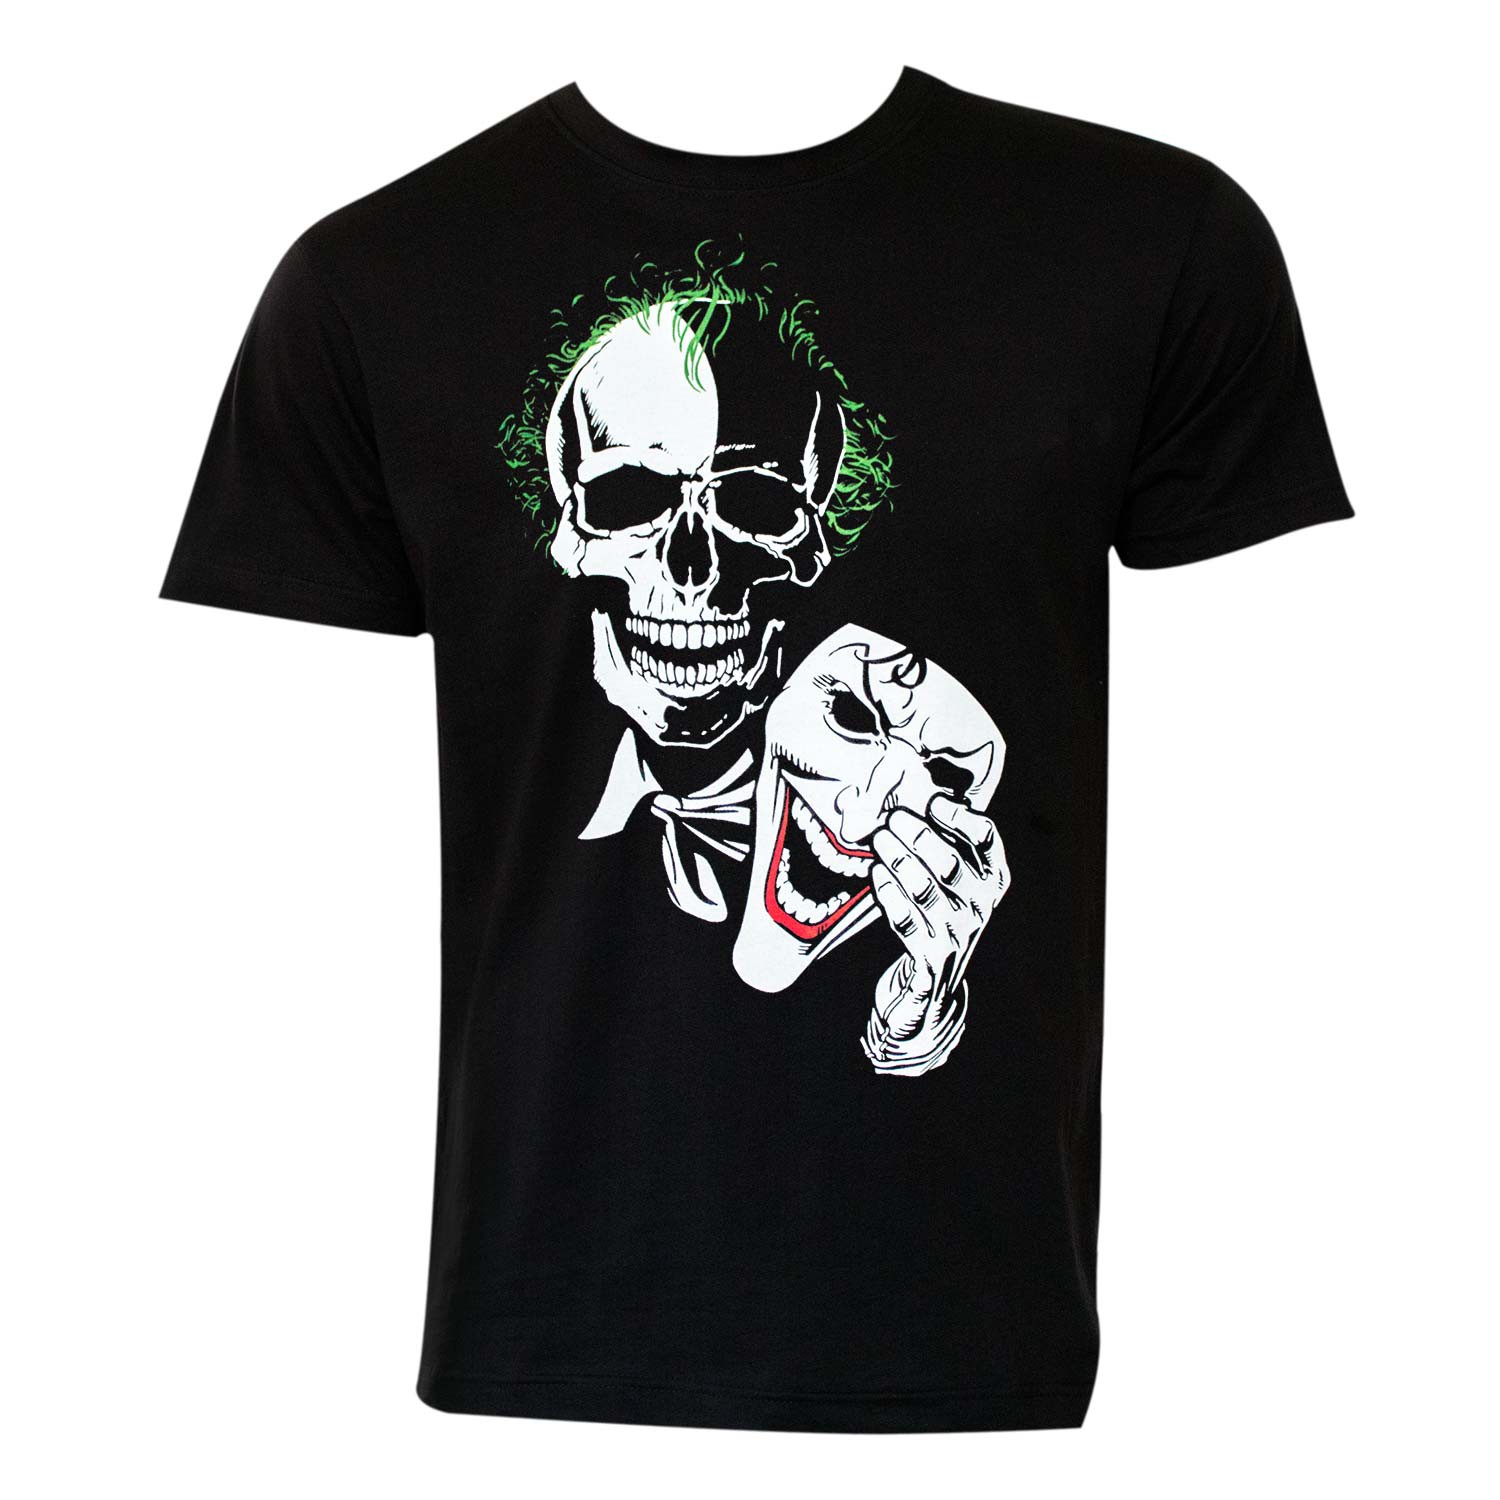 Joker Mask Tee Shirt